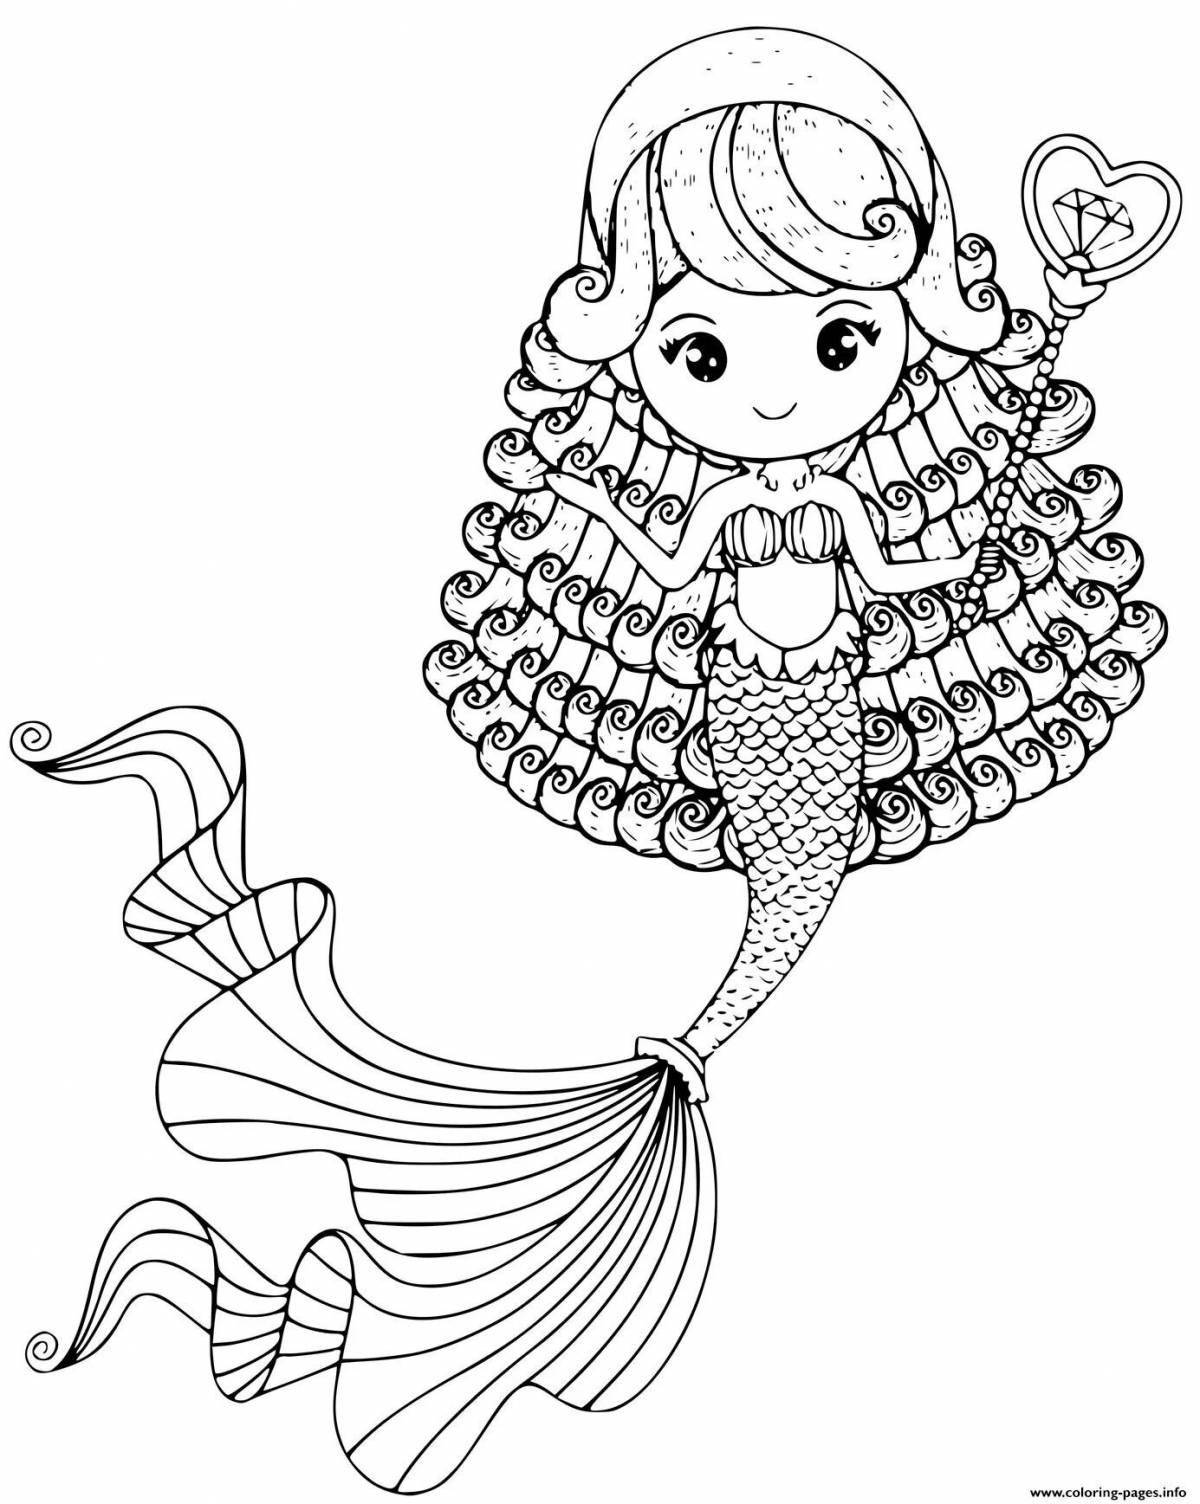 Fancy coloring doll lol little mermaid